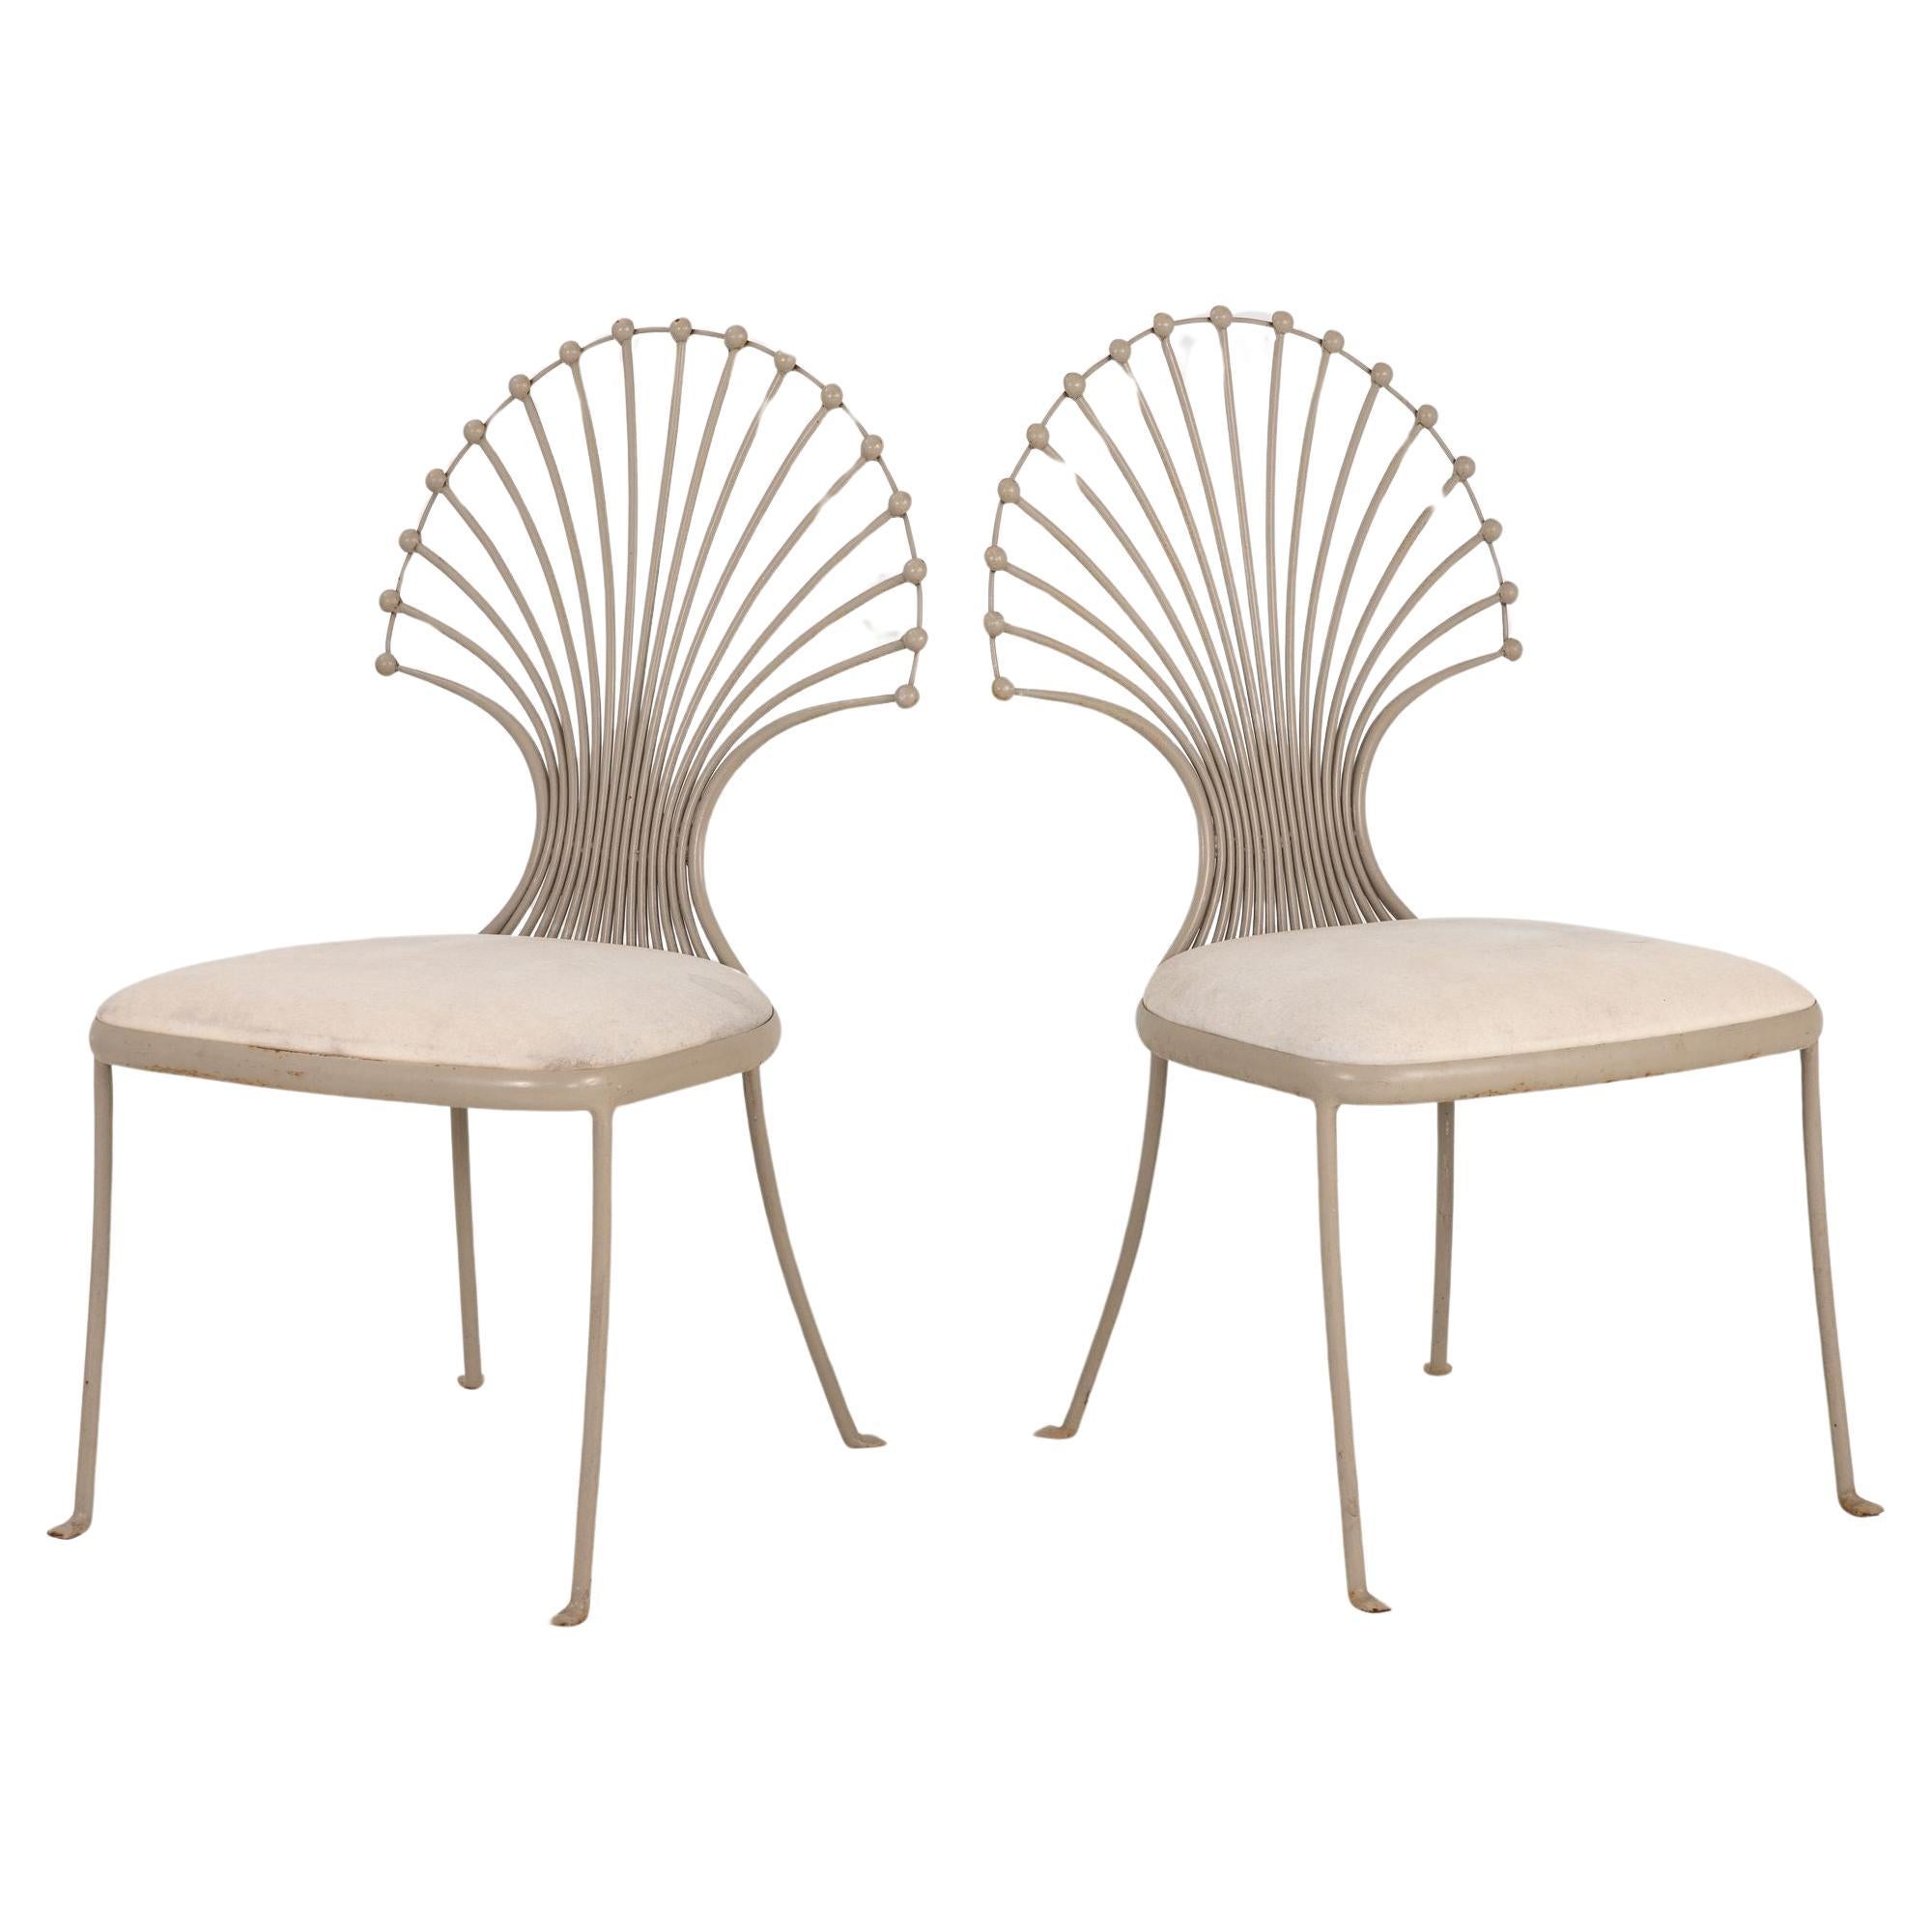 Beistellstühle mit Pfauen- oder Weizengarbenblattmotiv, grau lackiertes Aluminium, Paar